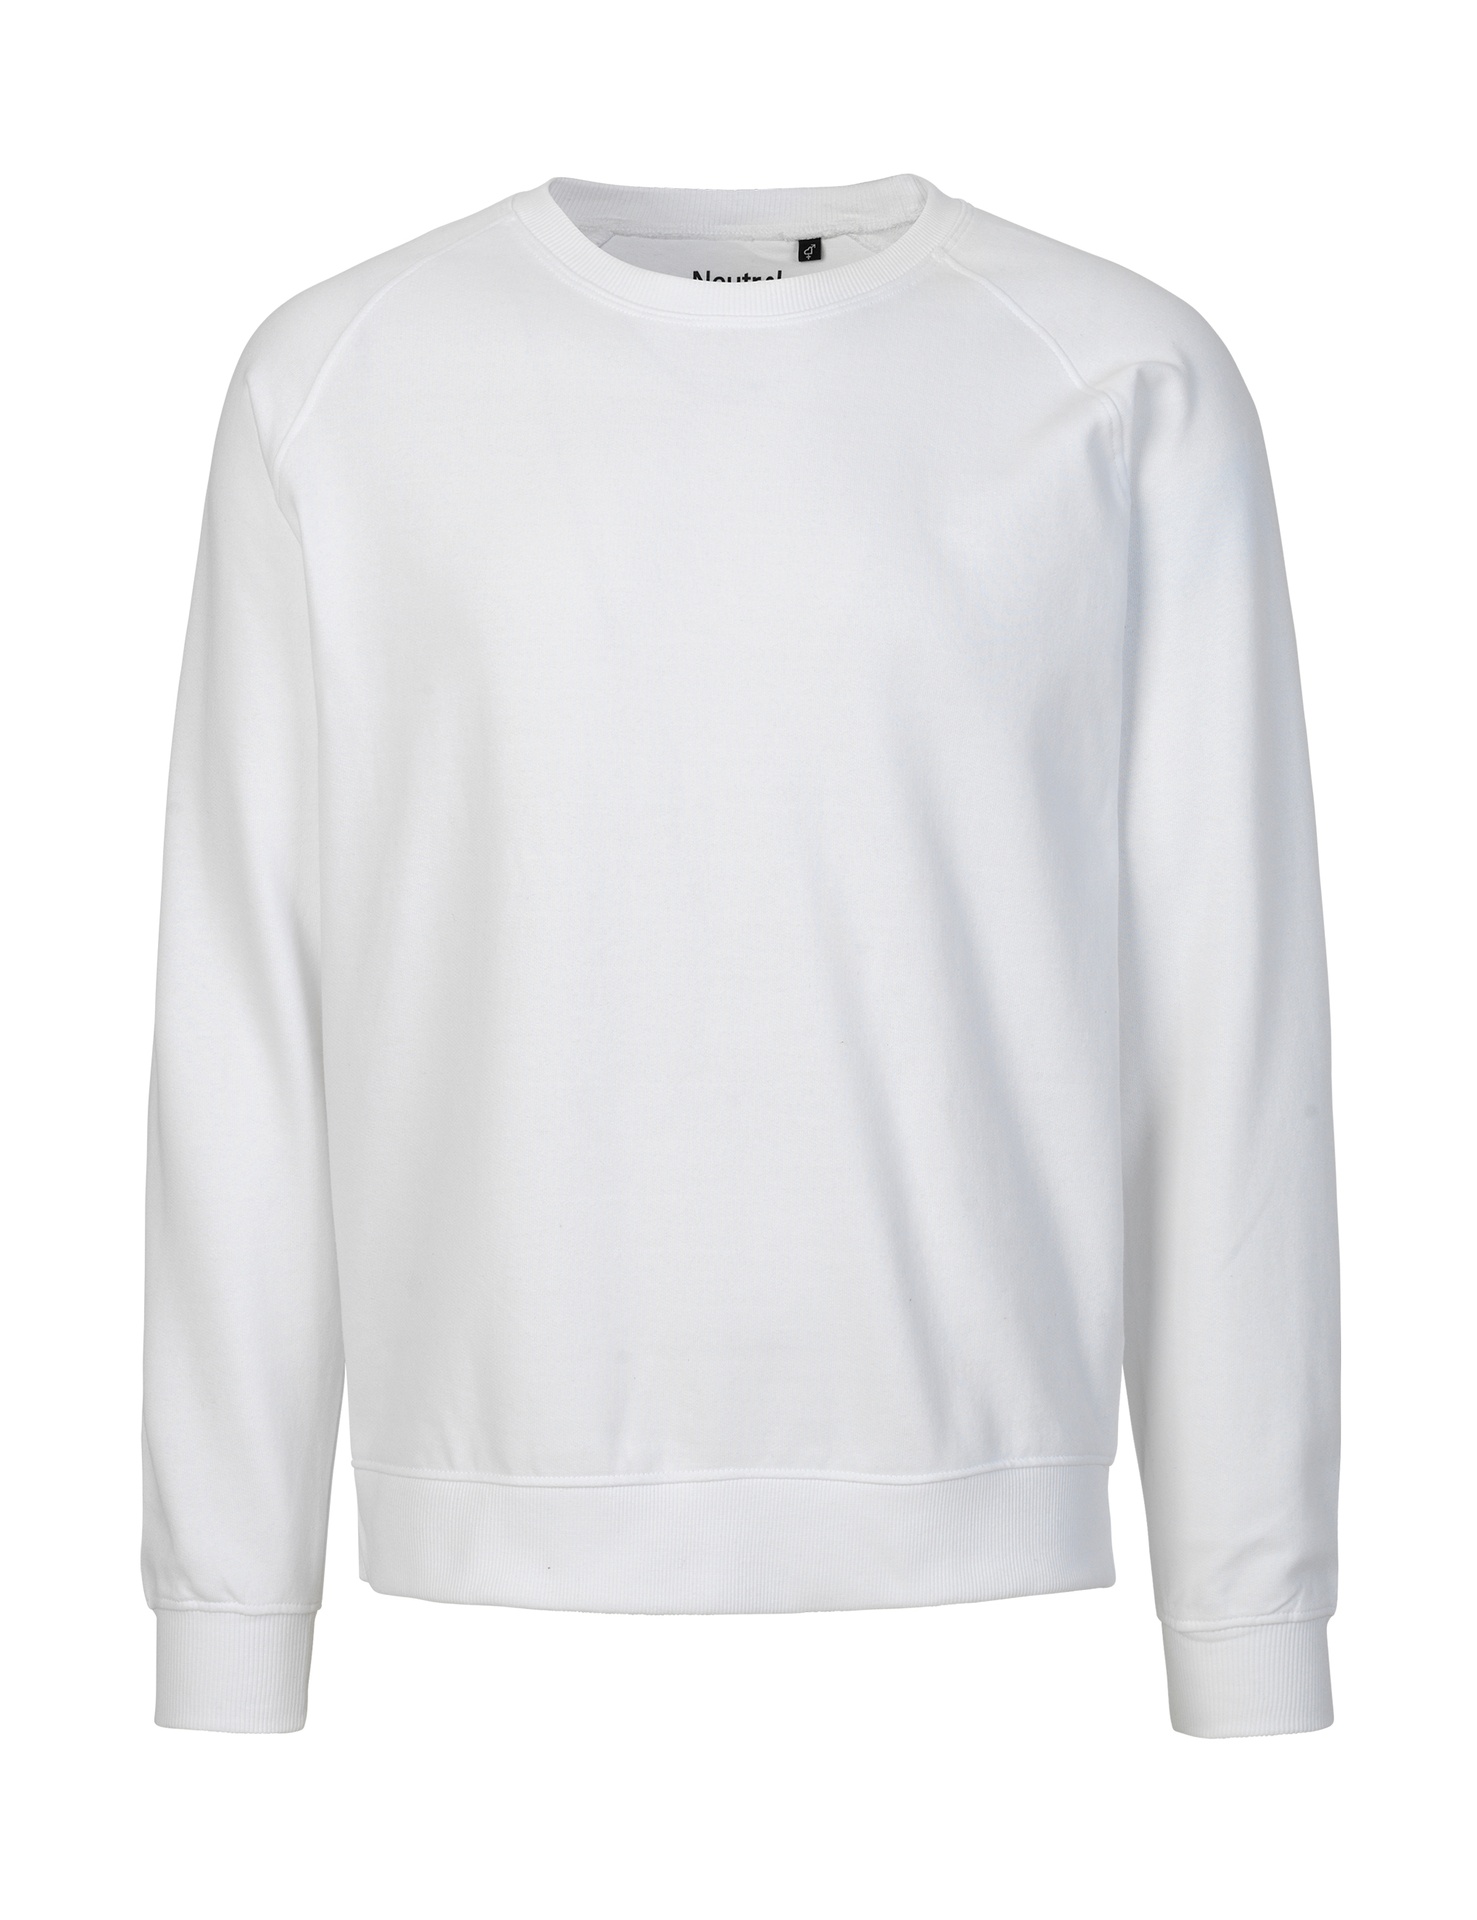 [PR/02656] Unisex Sweatshirt (White 01, XL)